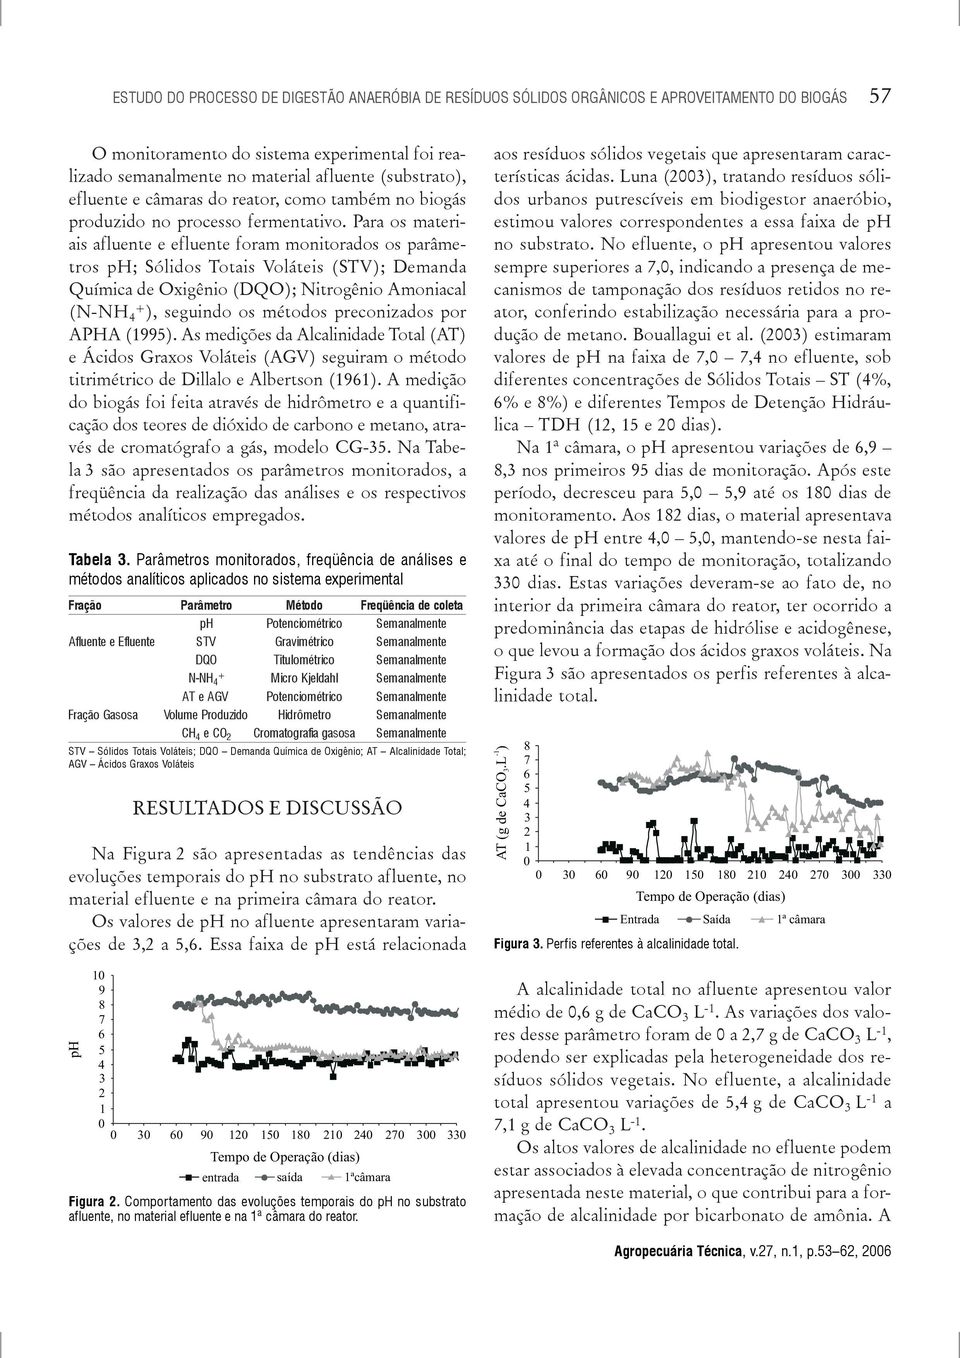 Para s materiais afluente e efluente fram mnitrads s parâmetrs ph; Sólids Ttais Vláteis (STV); Demanda Química de Oxigêni (DQO); Nitrgêni Amniacal (N-NH + ), seguind s métds precnizads pr APHA (1995).